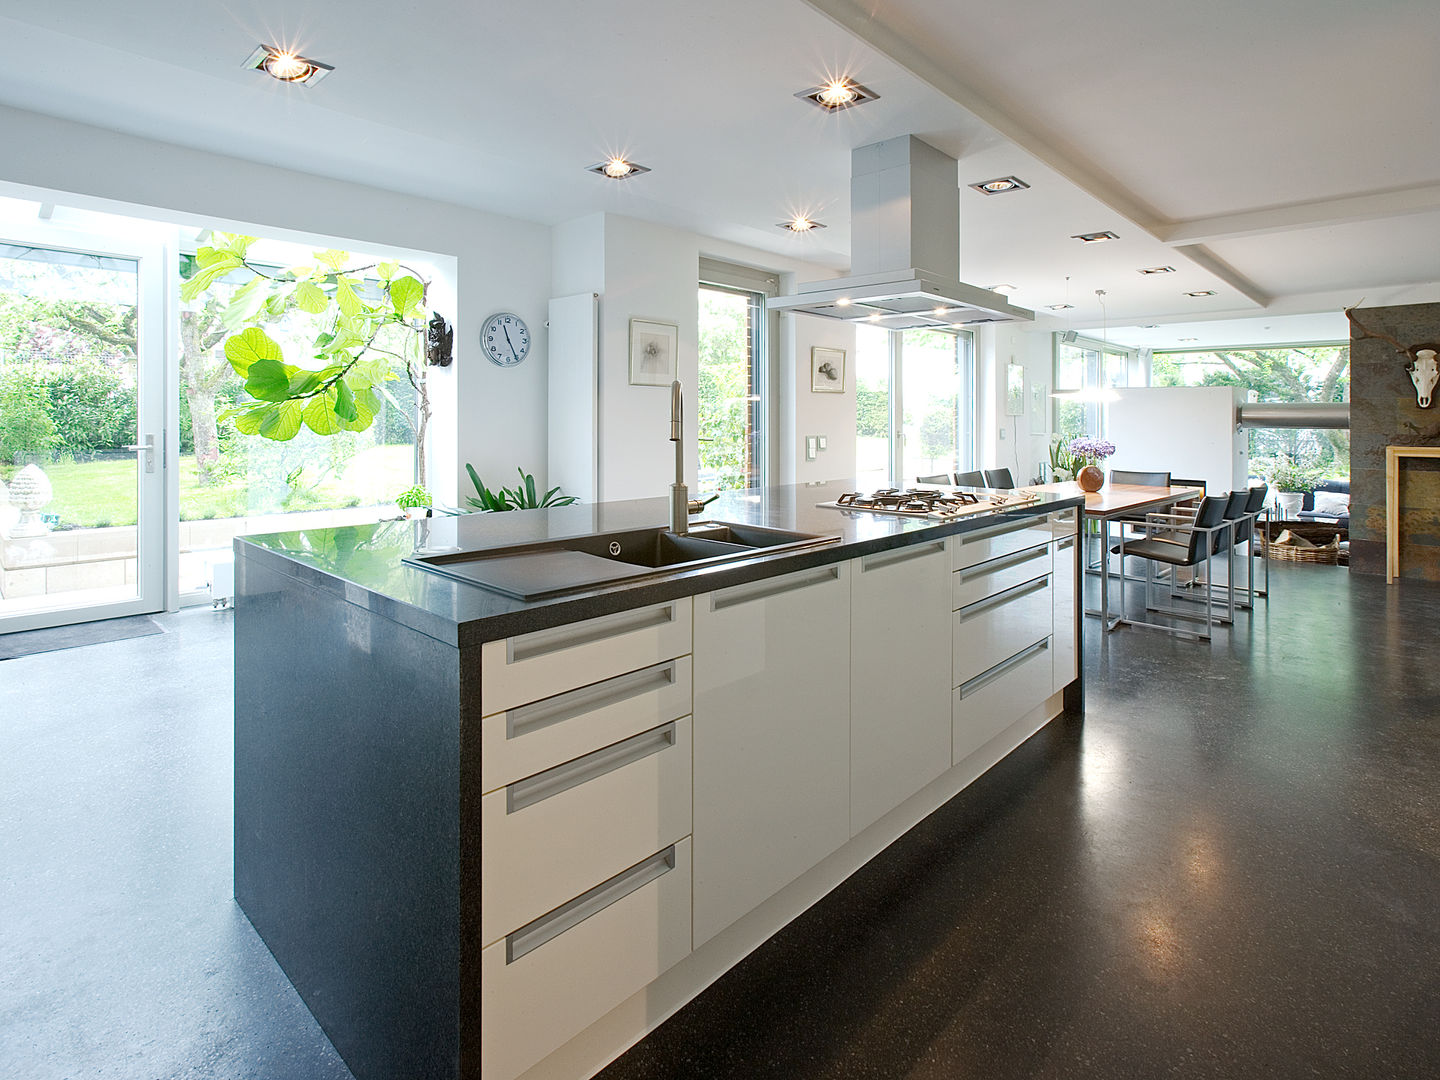 Wohnhaus M1 in Bad Boll , Gaus Architekten Gaus Architekten Modern kitchen